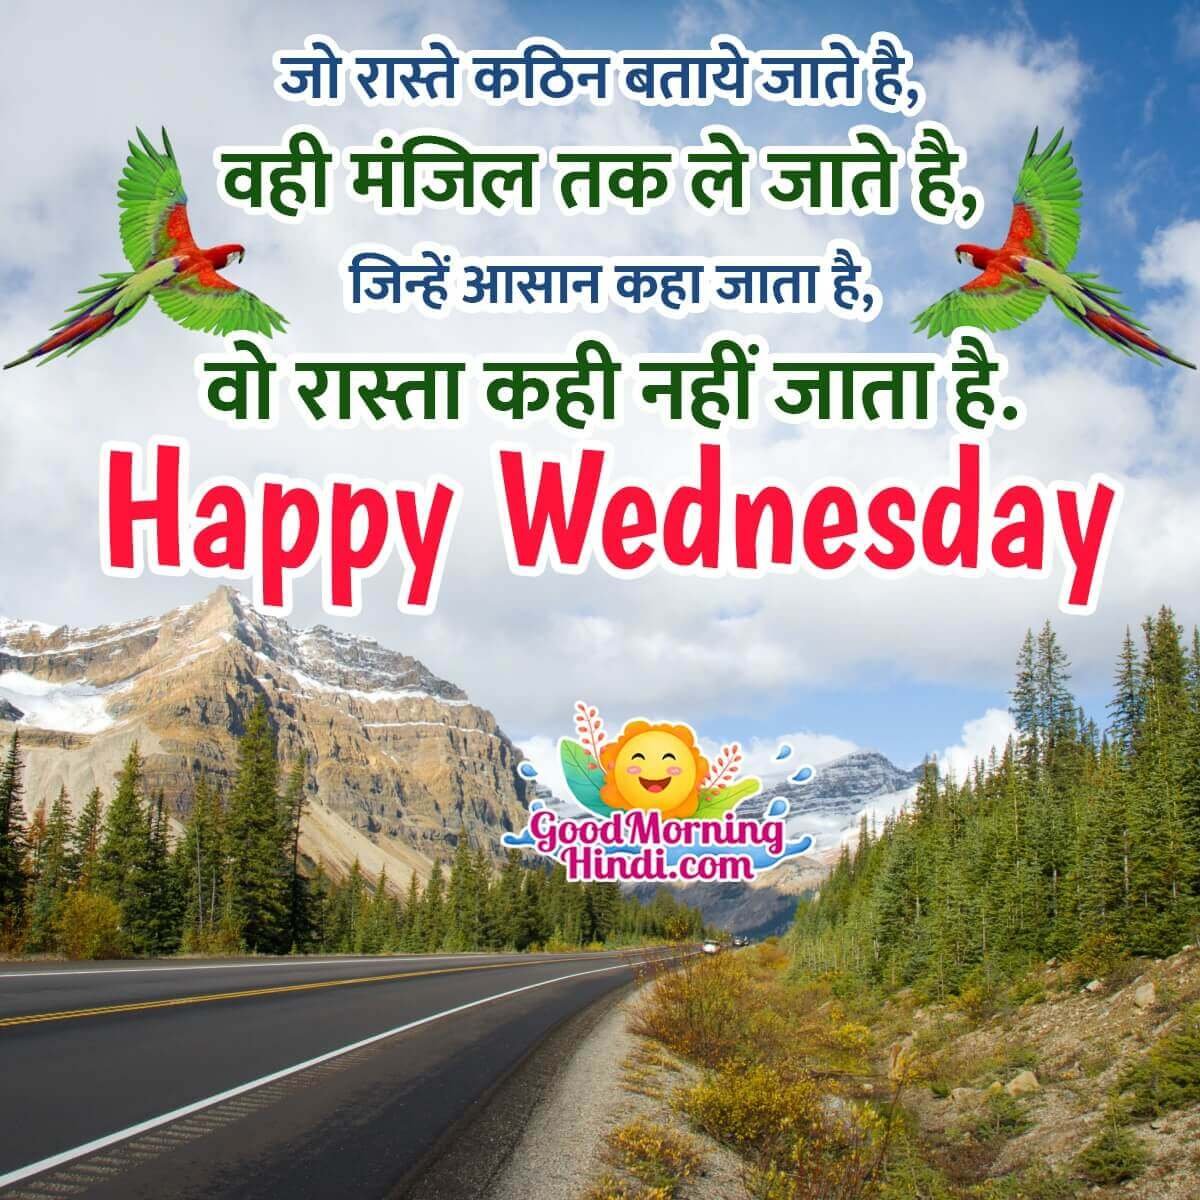 Happy Wednesday Shayari Status Images